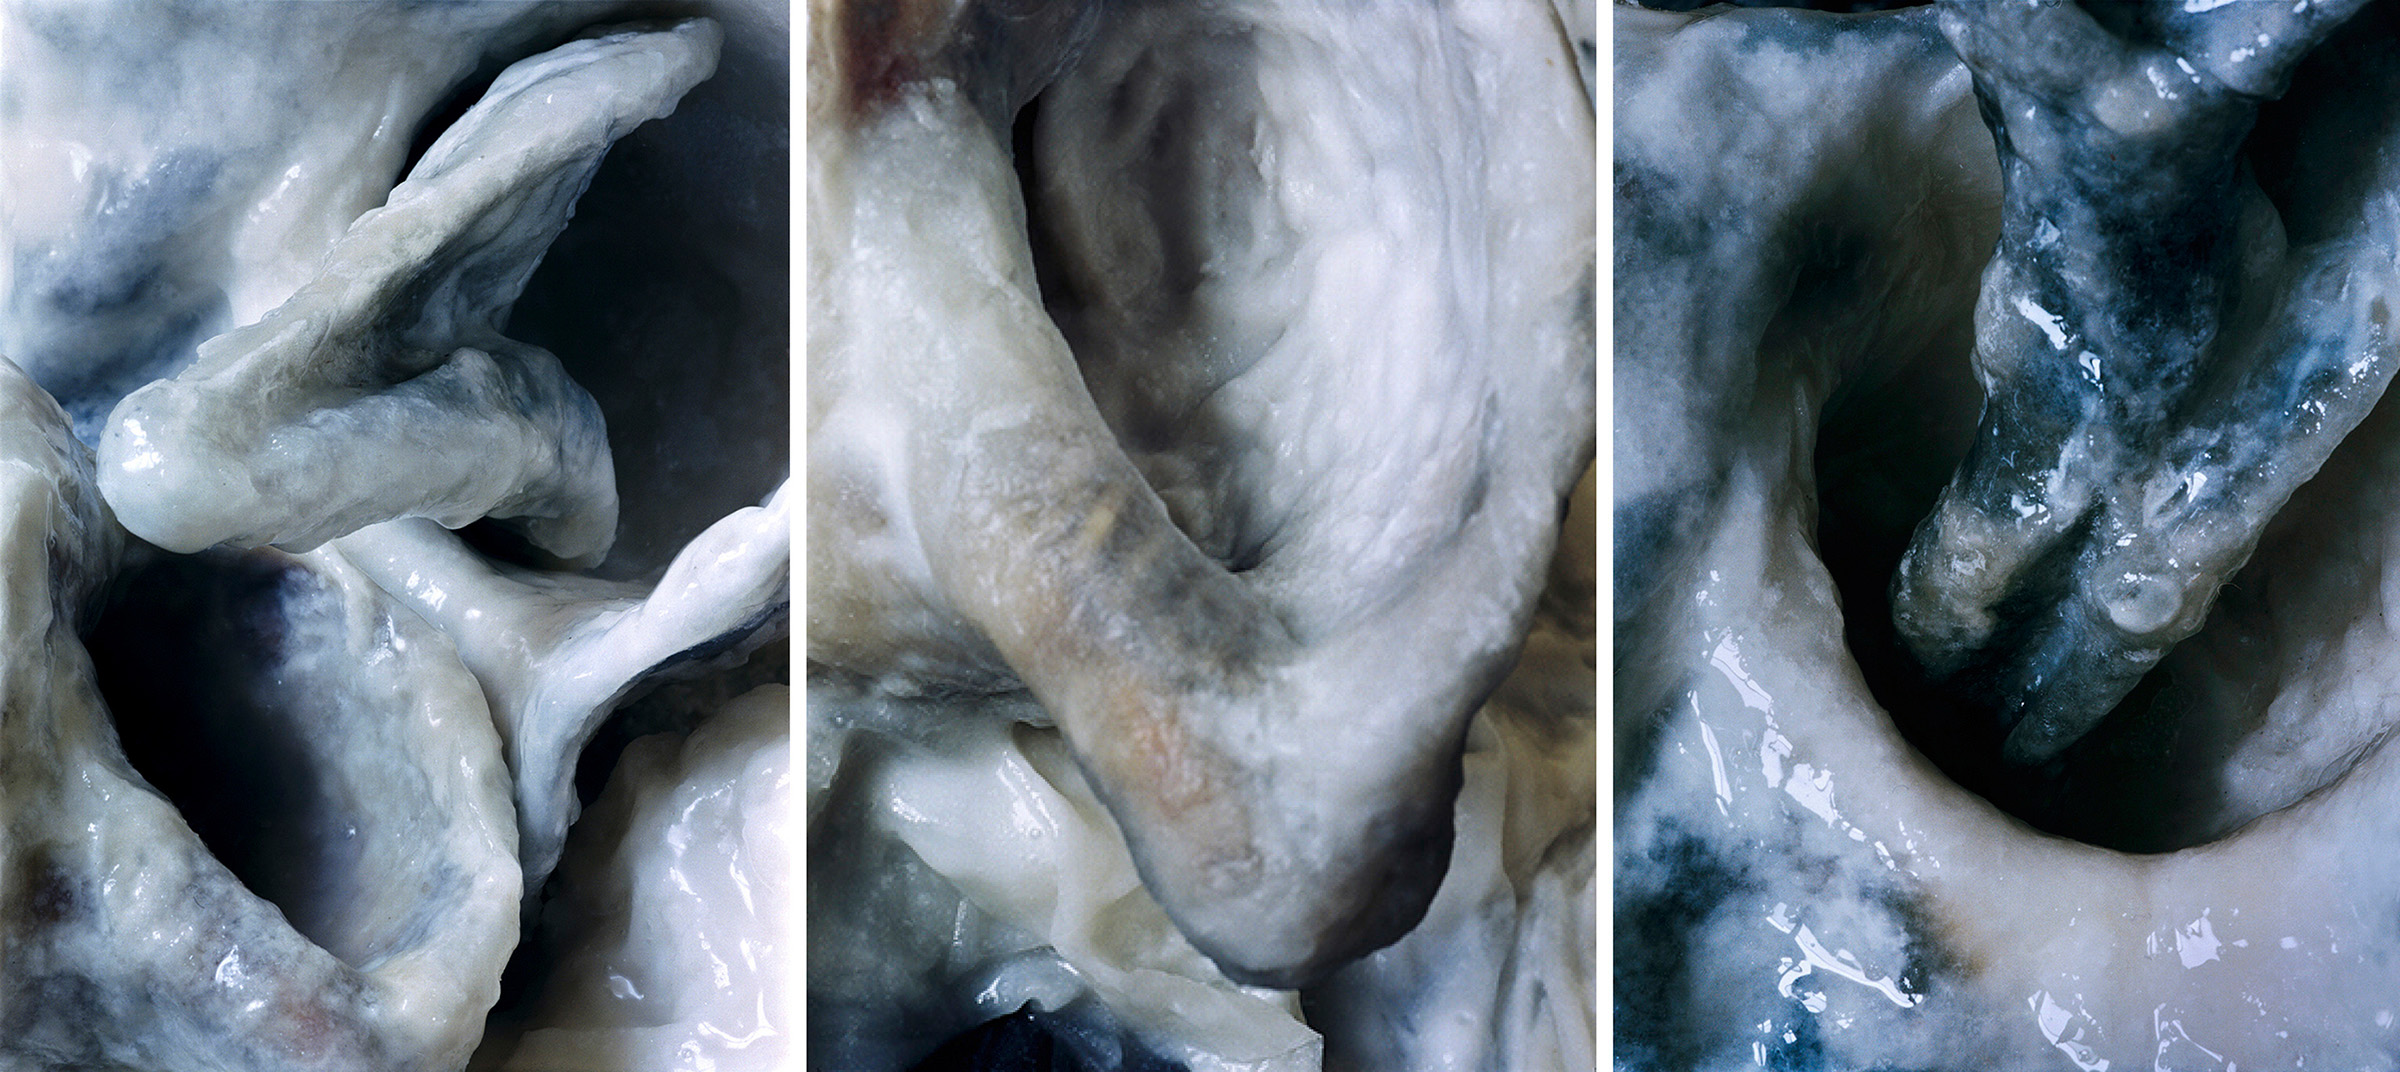   White Fluids  Triptich N°2, 2006/2015  T irages gélatino argentiques, 3 panneaux 144 x 104 cm chacun | Gelatin silver prints, 3 panels 56,69 x 40,94 inches each  2/4 